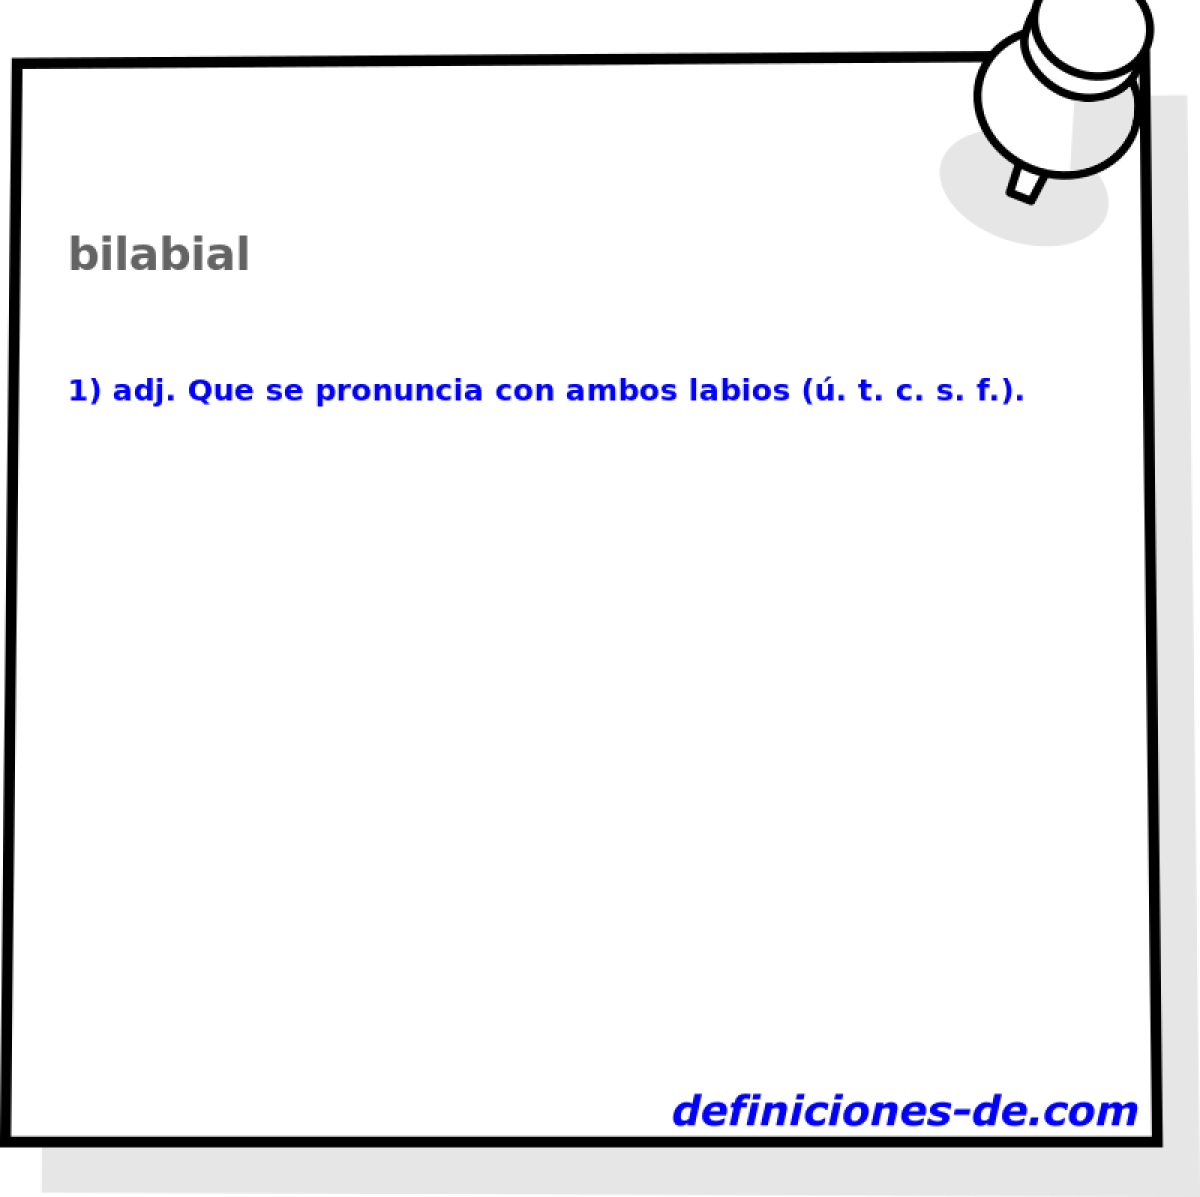 bilabial 